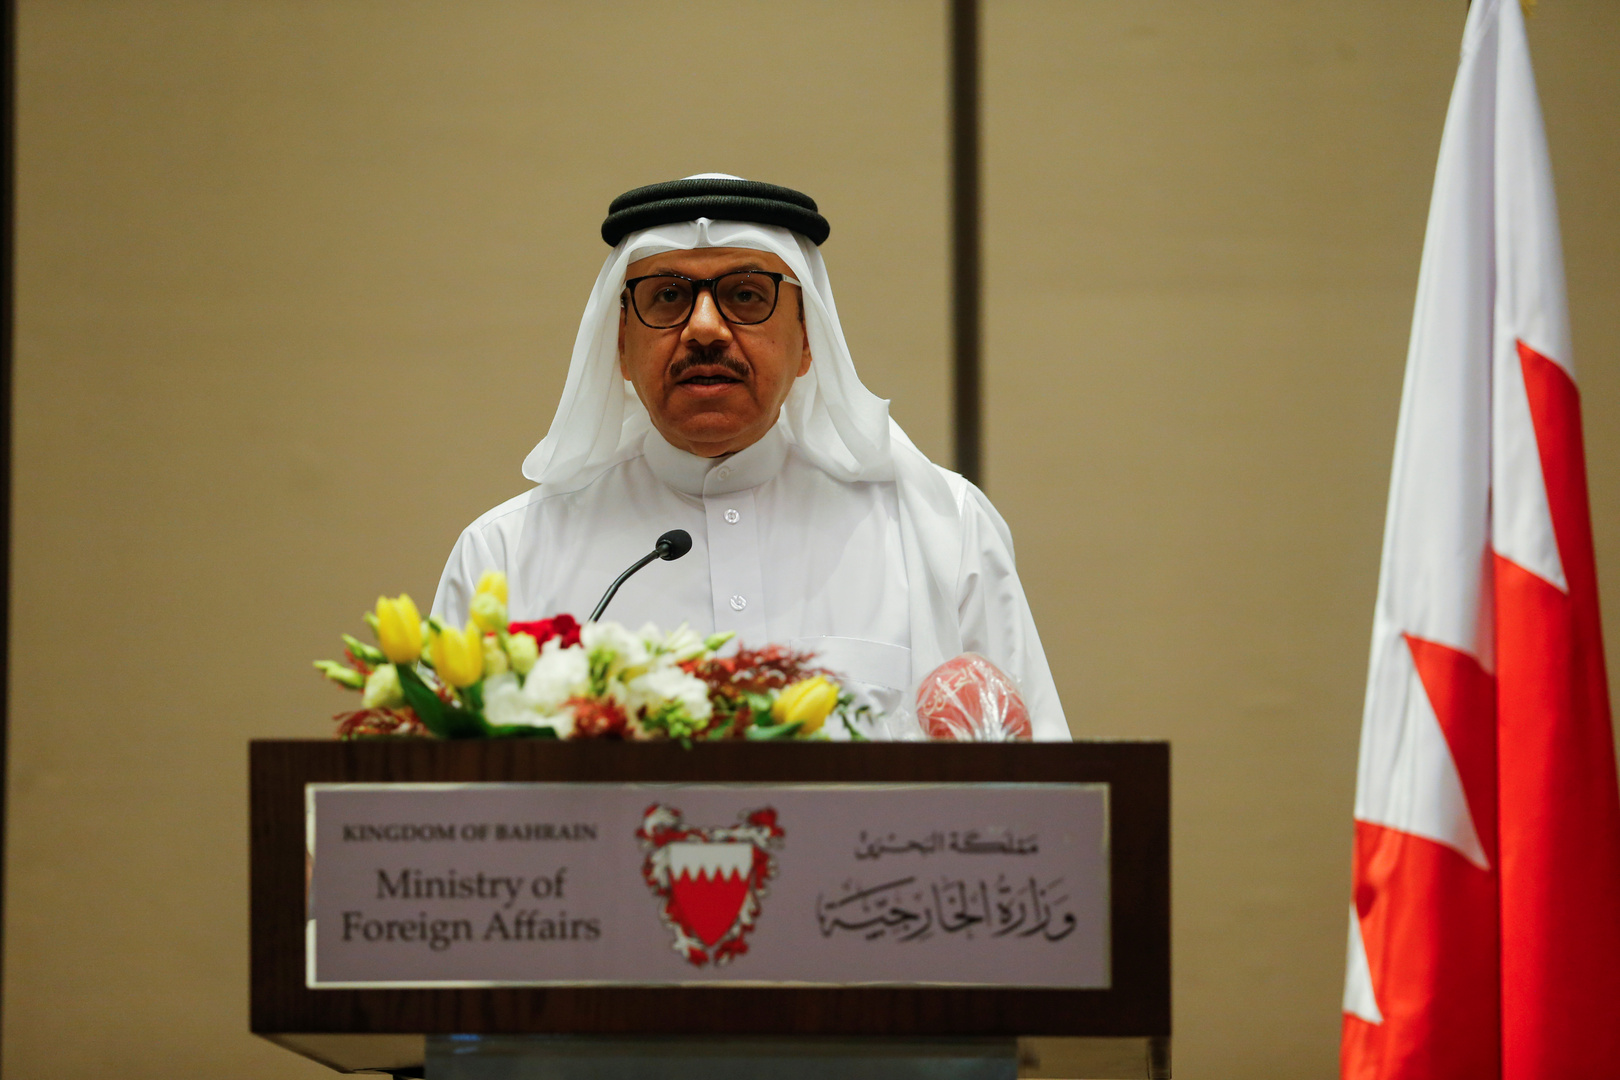 البحرين تعرب عن تطلعها لعقد قمة دول مجلس التعاون الخليجي